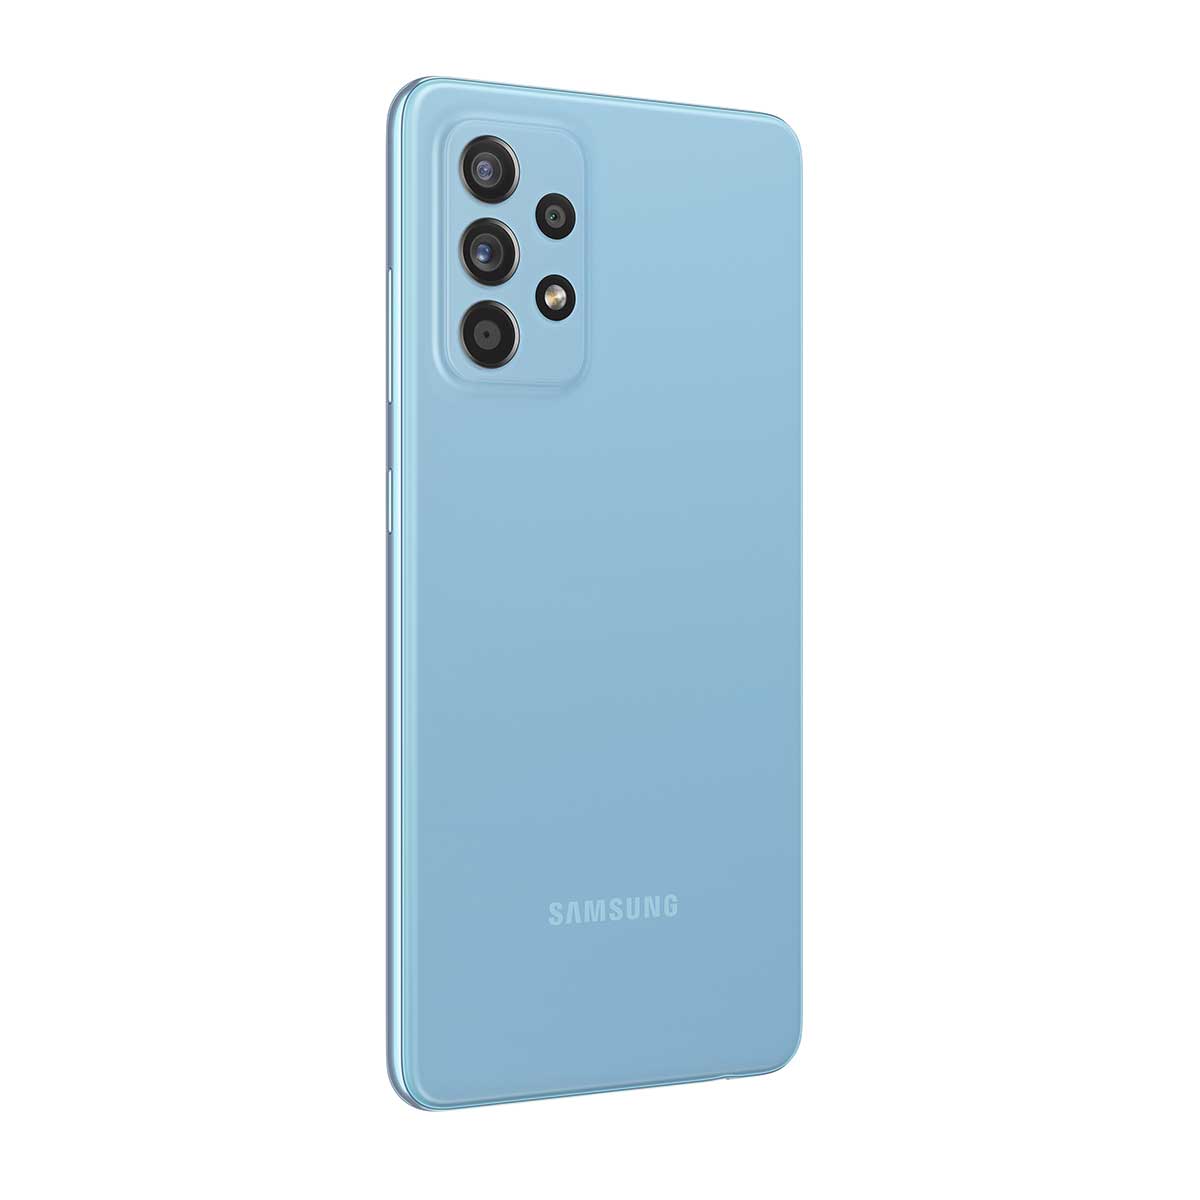 Smartphone Samsung A52 128GB Azul 4G Tela 6.5” Câmera Quádrupla 64MP Selfie 32MP Dual Chip Traseira Esquerdo